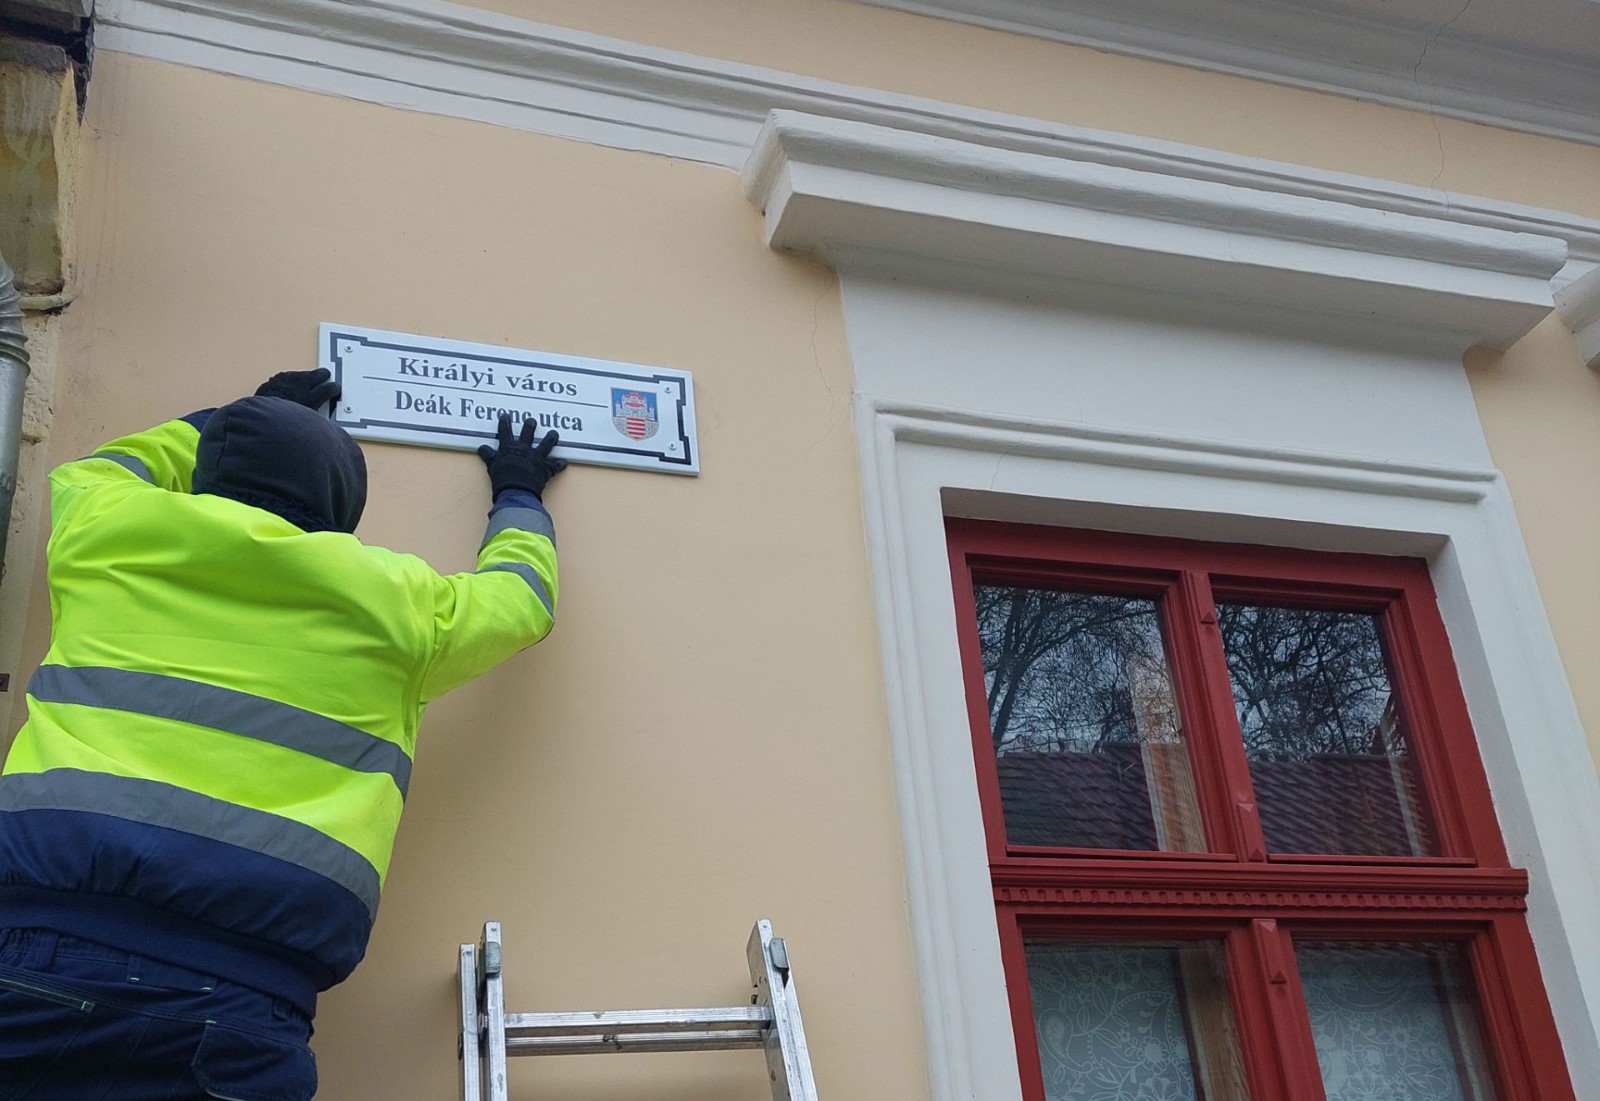 Megkezdődött az utcanévtáblák kihelyezése Esztergomban